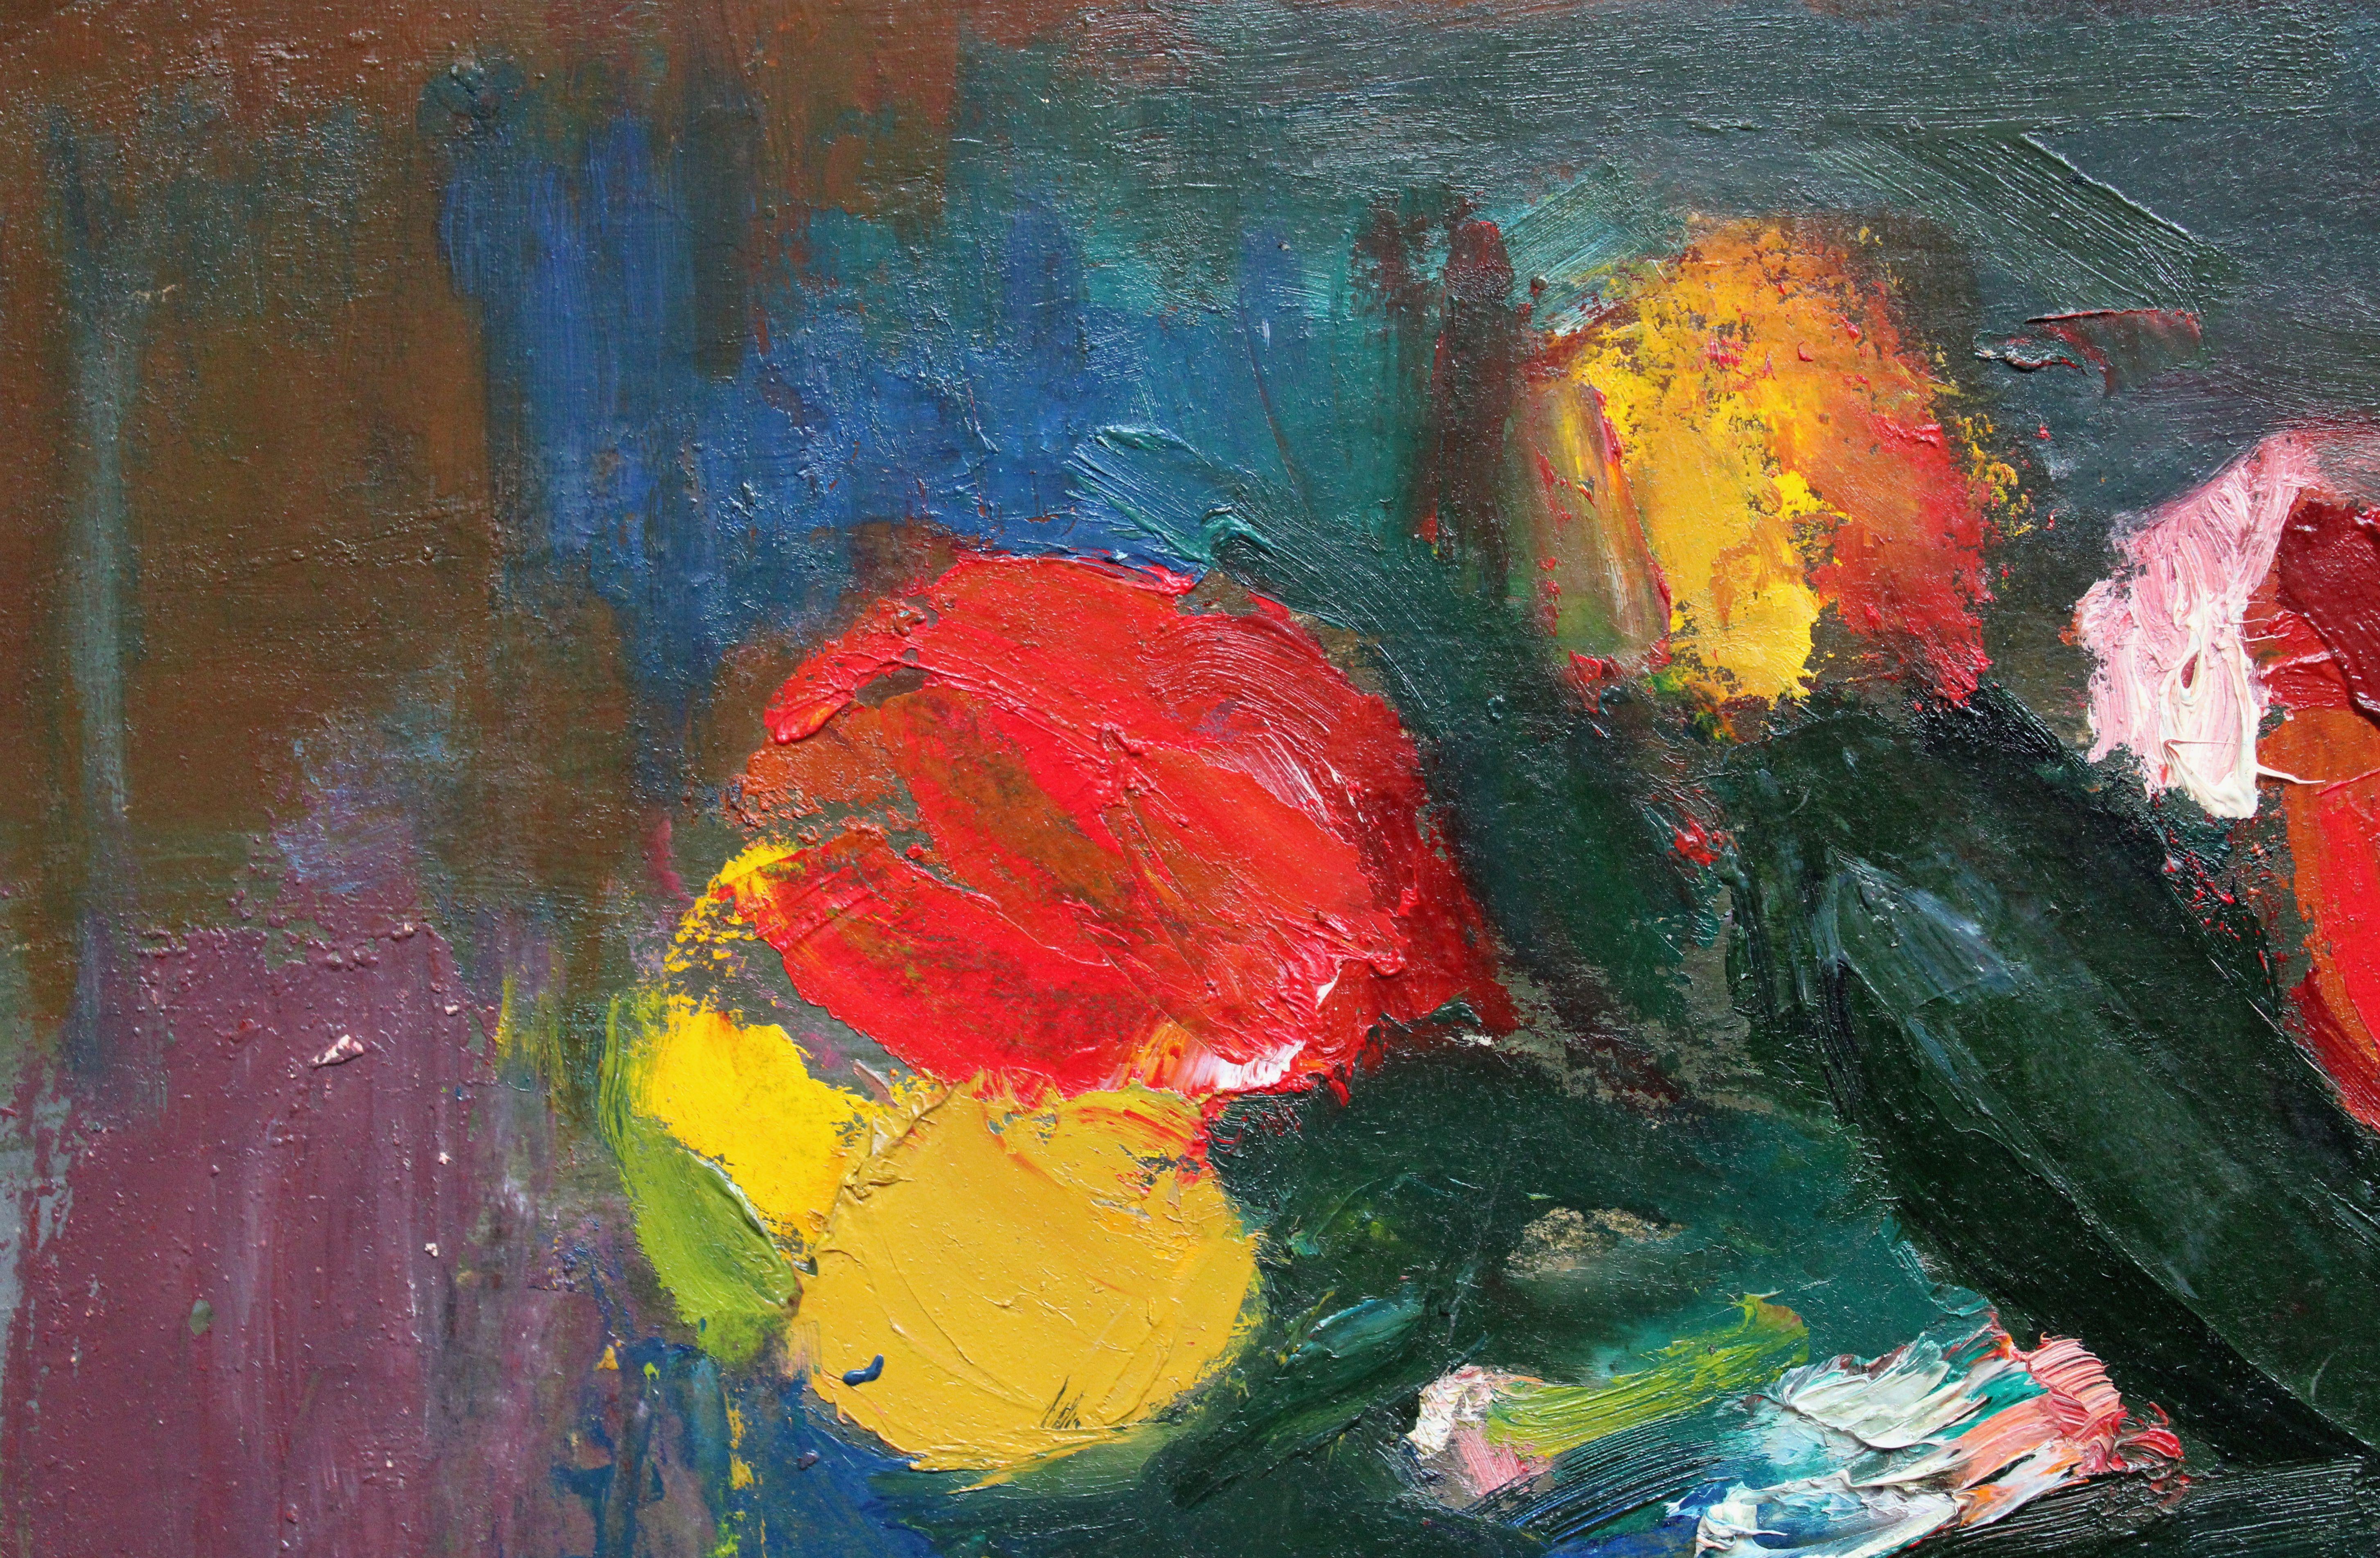 Tulips avec poire. Huile sur carton, 50x40 cm

Alexandre Rodin (1922-2001)
Peintre Né dans une famille d'agriculteurs. Épouse Rasma Lace - érudite en art. Il a étudié à l'école d'art de Stalingrad, à l'école d'art de Saratov, et a obtenu un diplôme